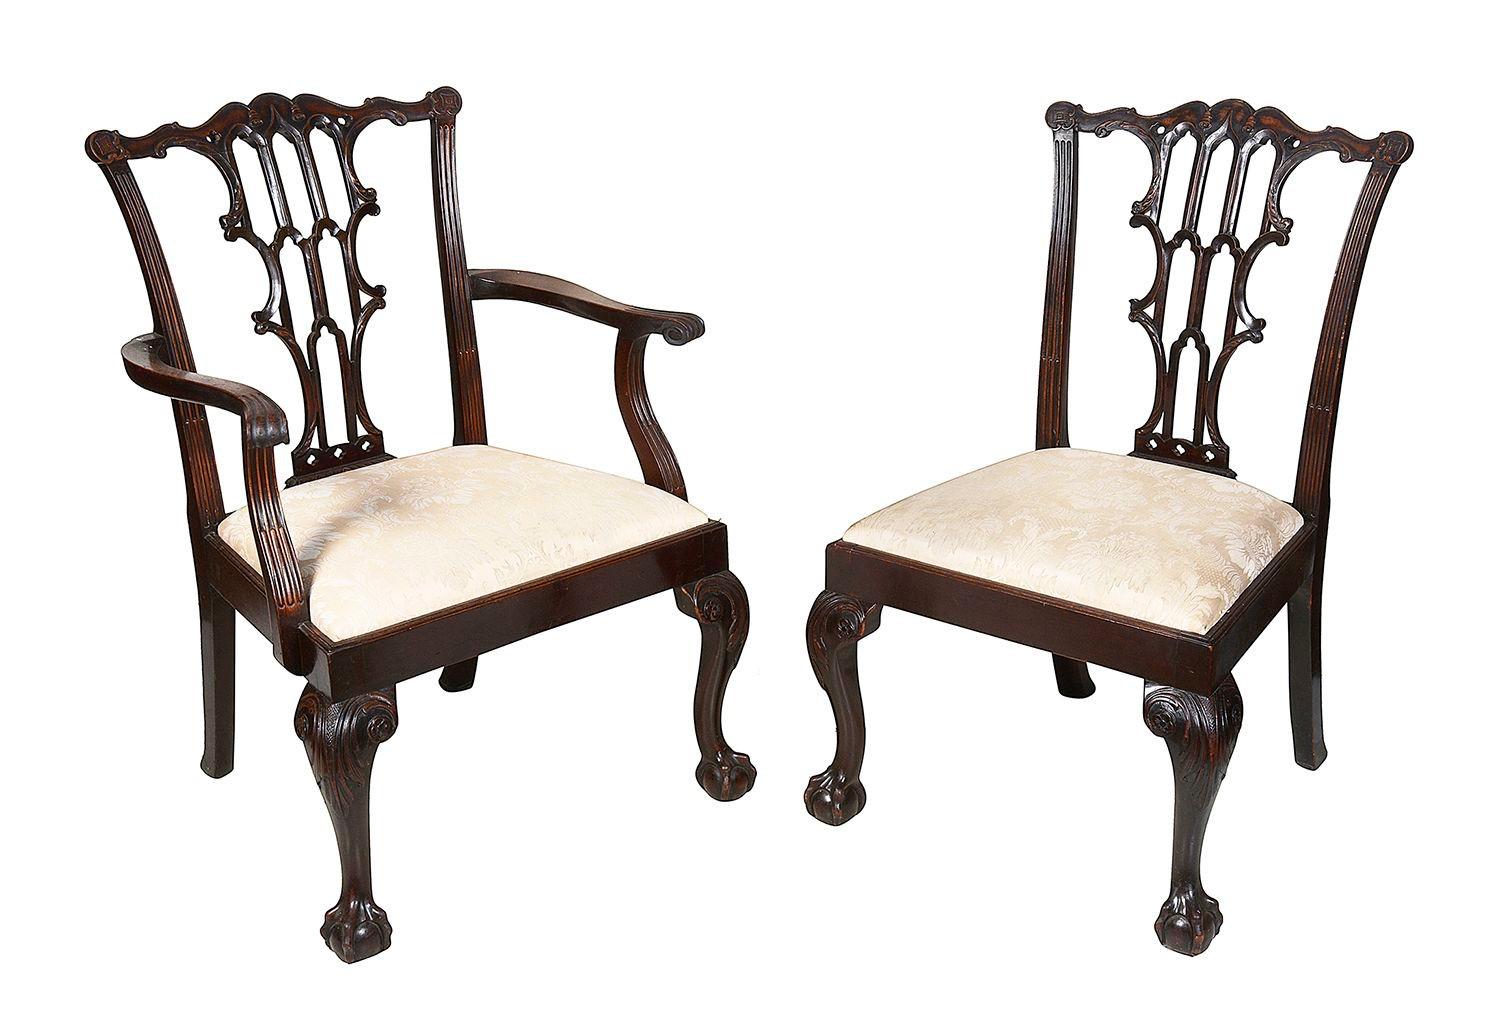 Ein Satz von 10 Esszimmerstühlen im Chippendale-Stil aus Mahagoni des 19. Jahrhunderts (2 Armlehnen, 6 Einzelstühle), jeweils mit handgeschnitzter und durchbrochener Rückenlehne, gepolsterten Sitzen und auf geschnitzten Cabriole-Beinen, die in